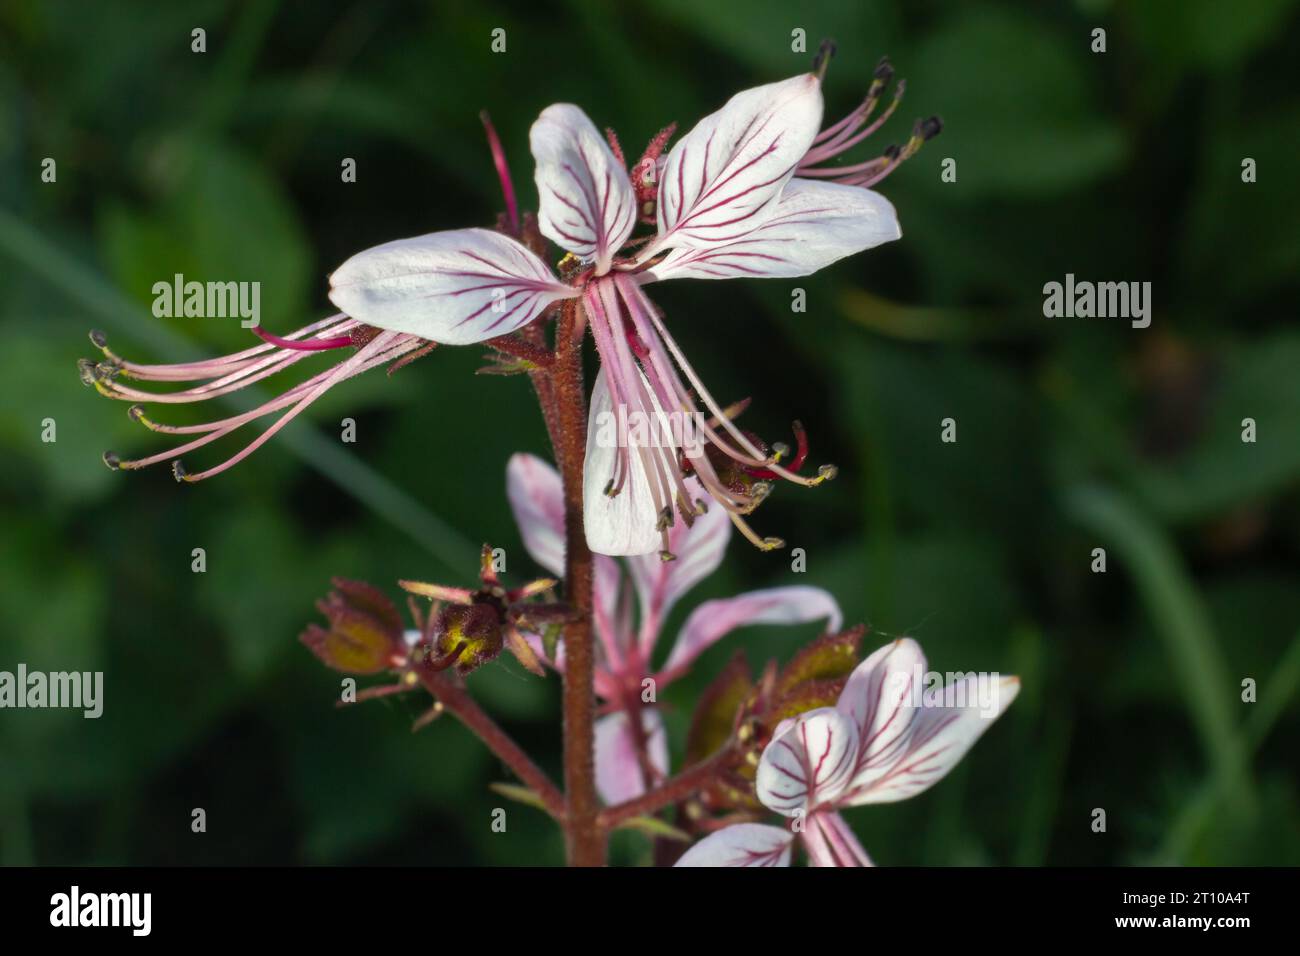 Burning-bush, Dictamnus albus. Dictamnus is a genus of flowering plant in the family Rutaceae. Stock Photo